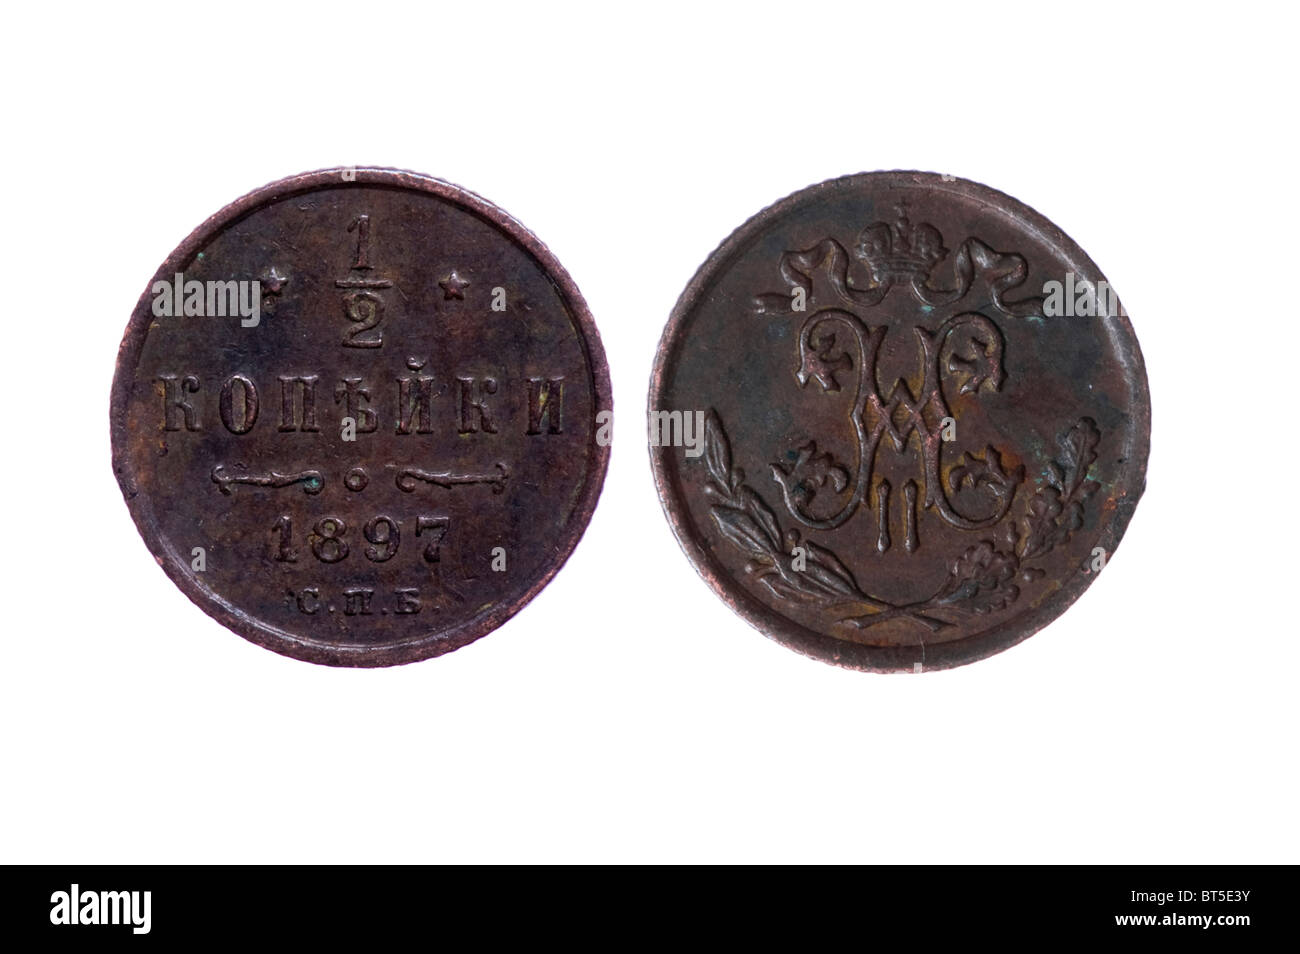 Objekt auf weiß - Russland Münzen aus der Kaiserzeit mit Rost hautnah Stockfoto